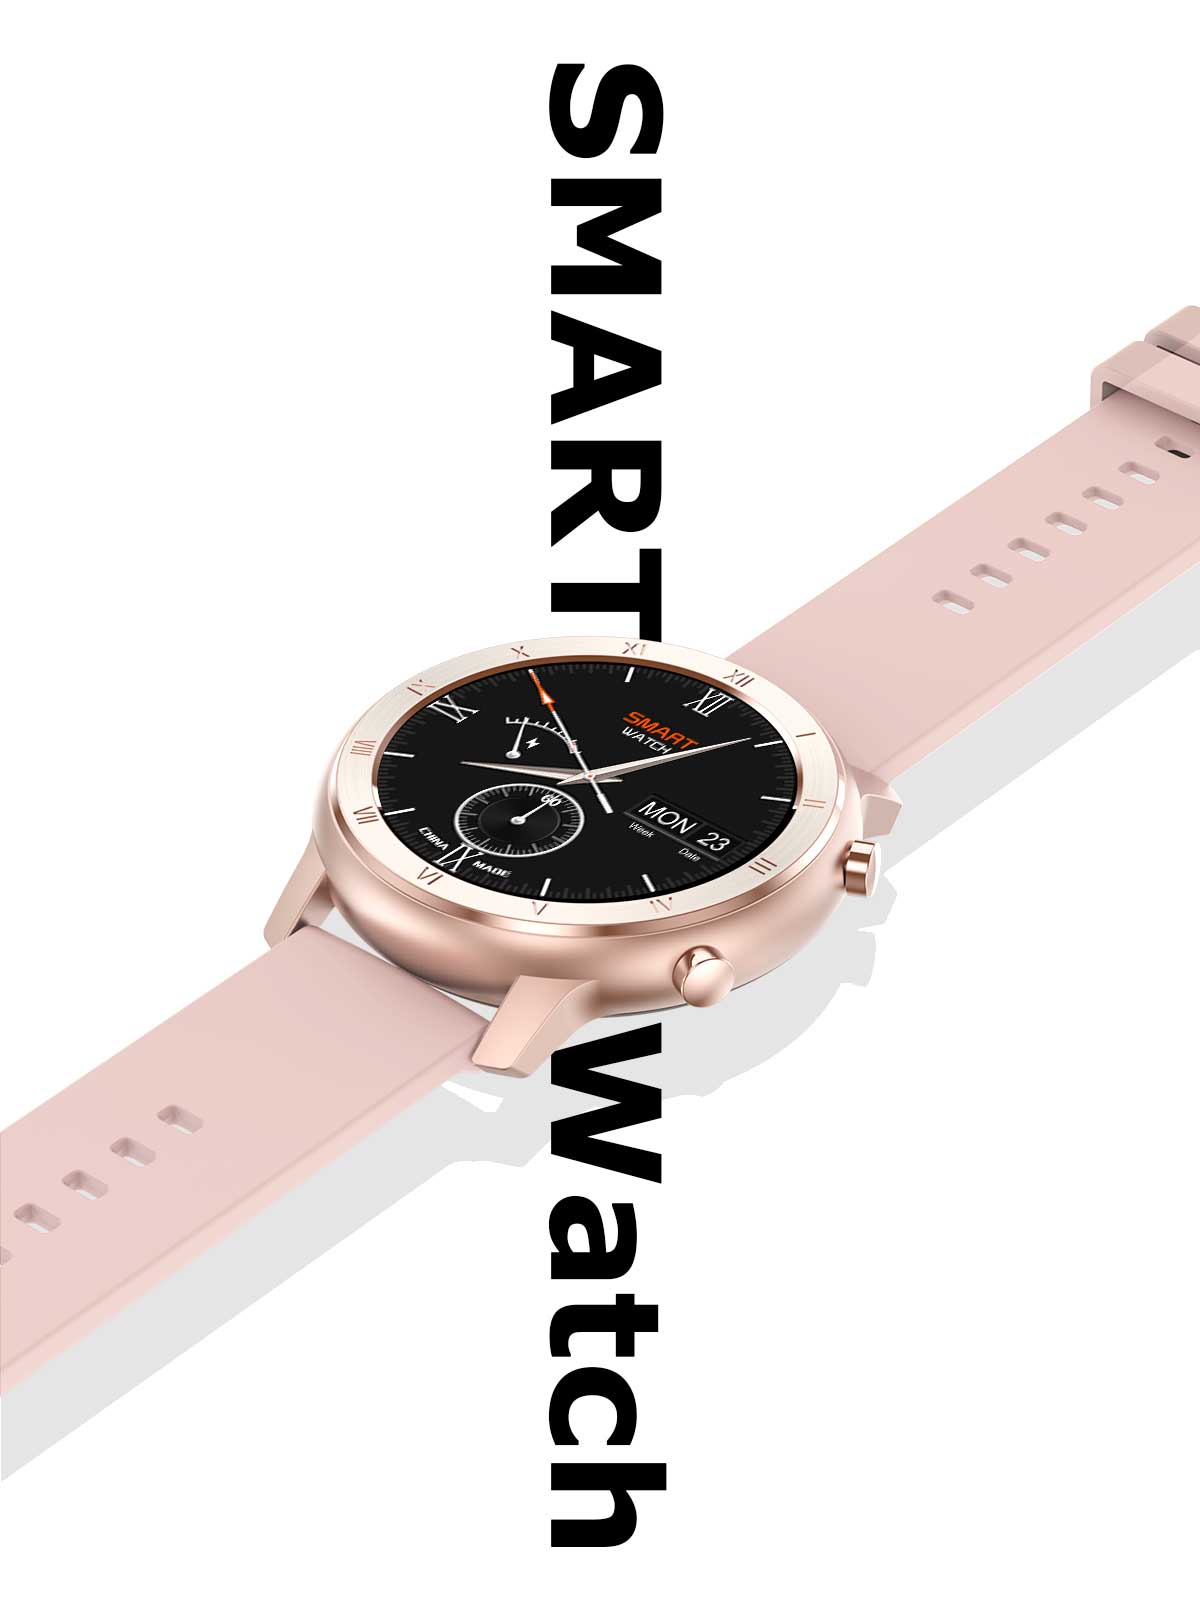 Smartwatch DT89